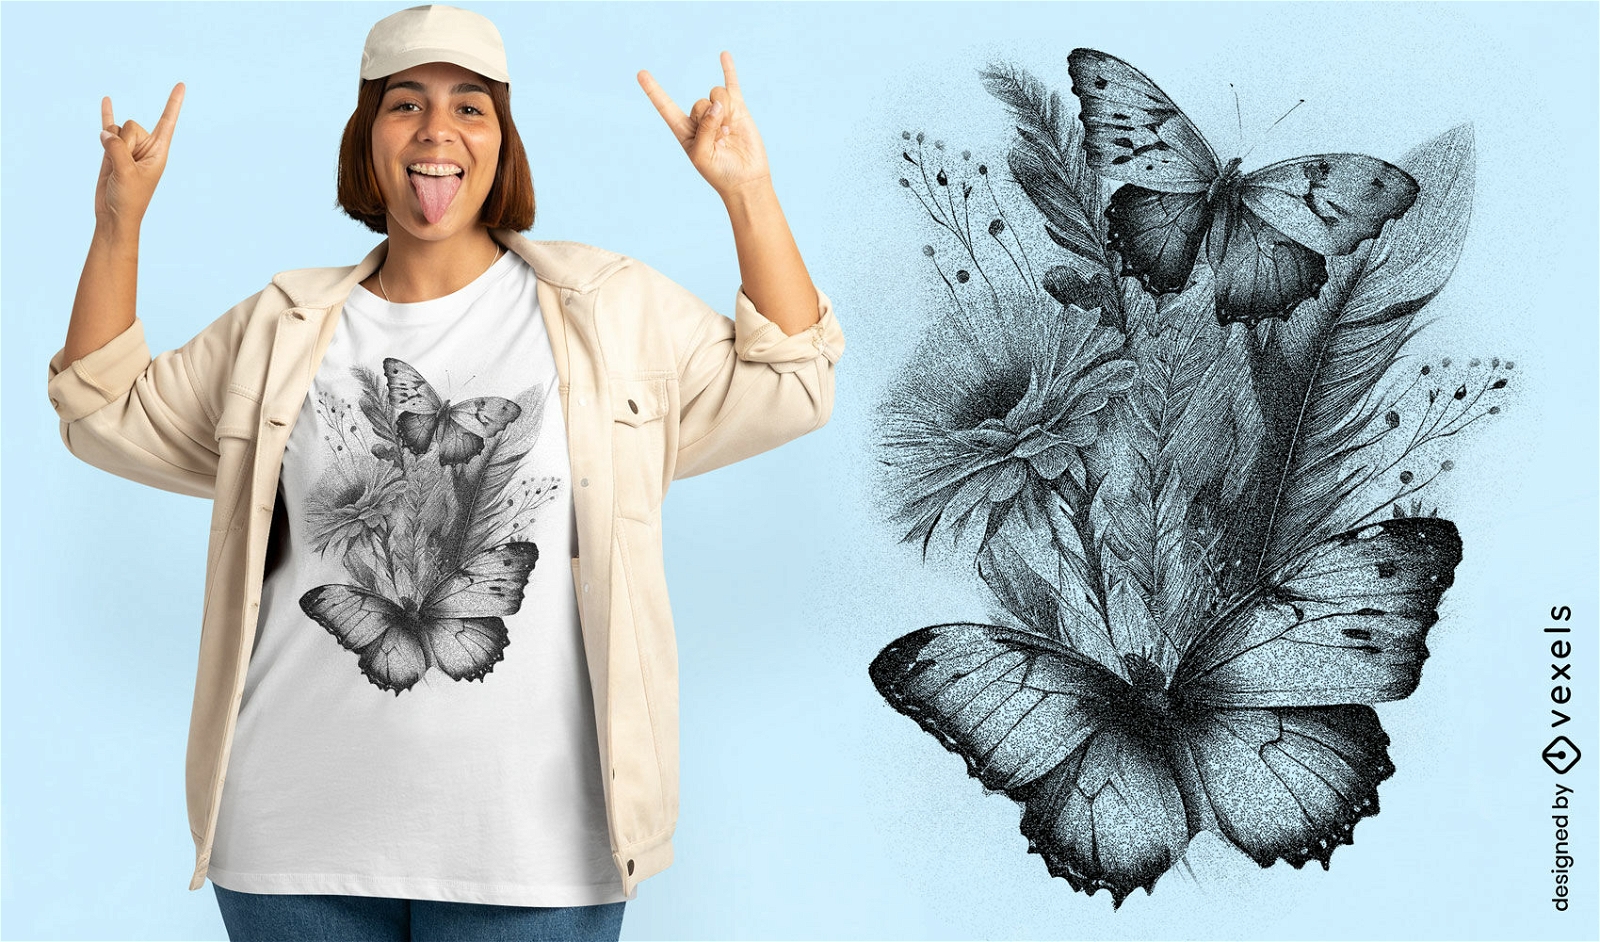 Blumenarrangement mit Schmetterlings-T-Shirt-Design